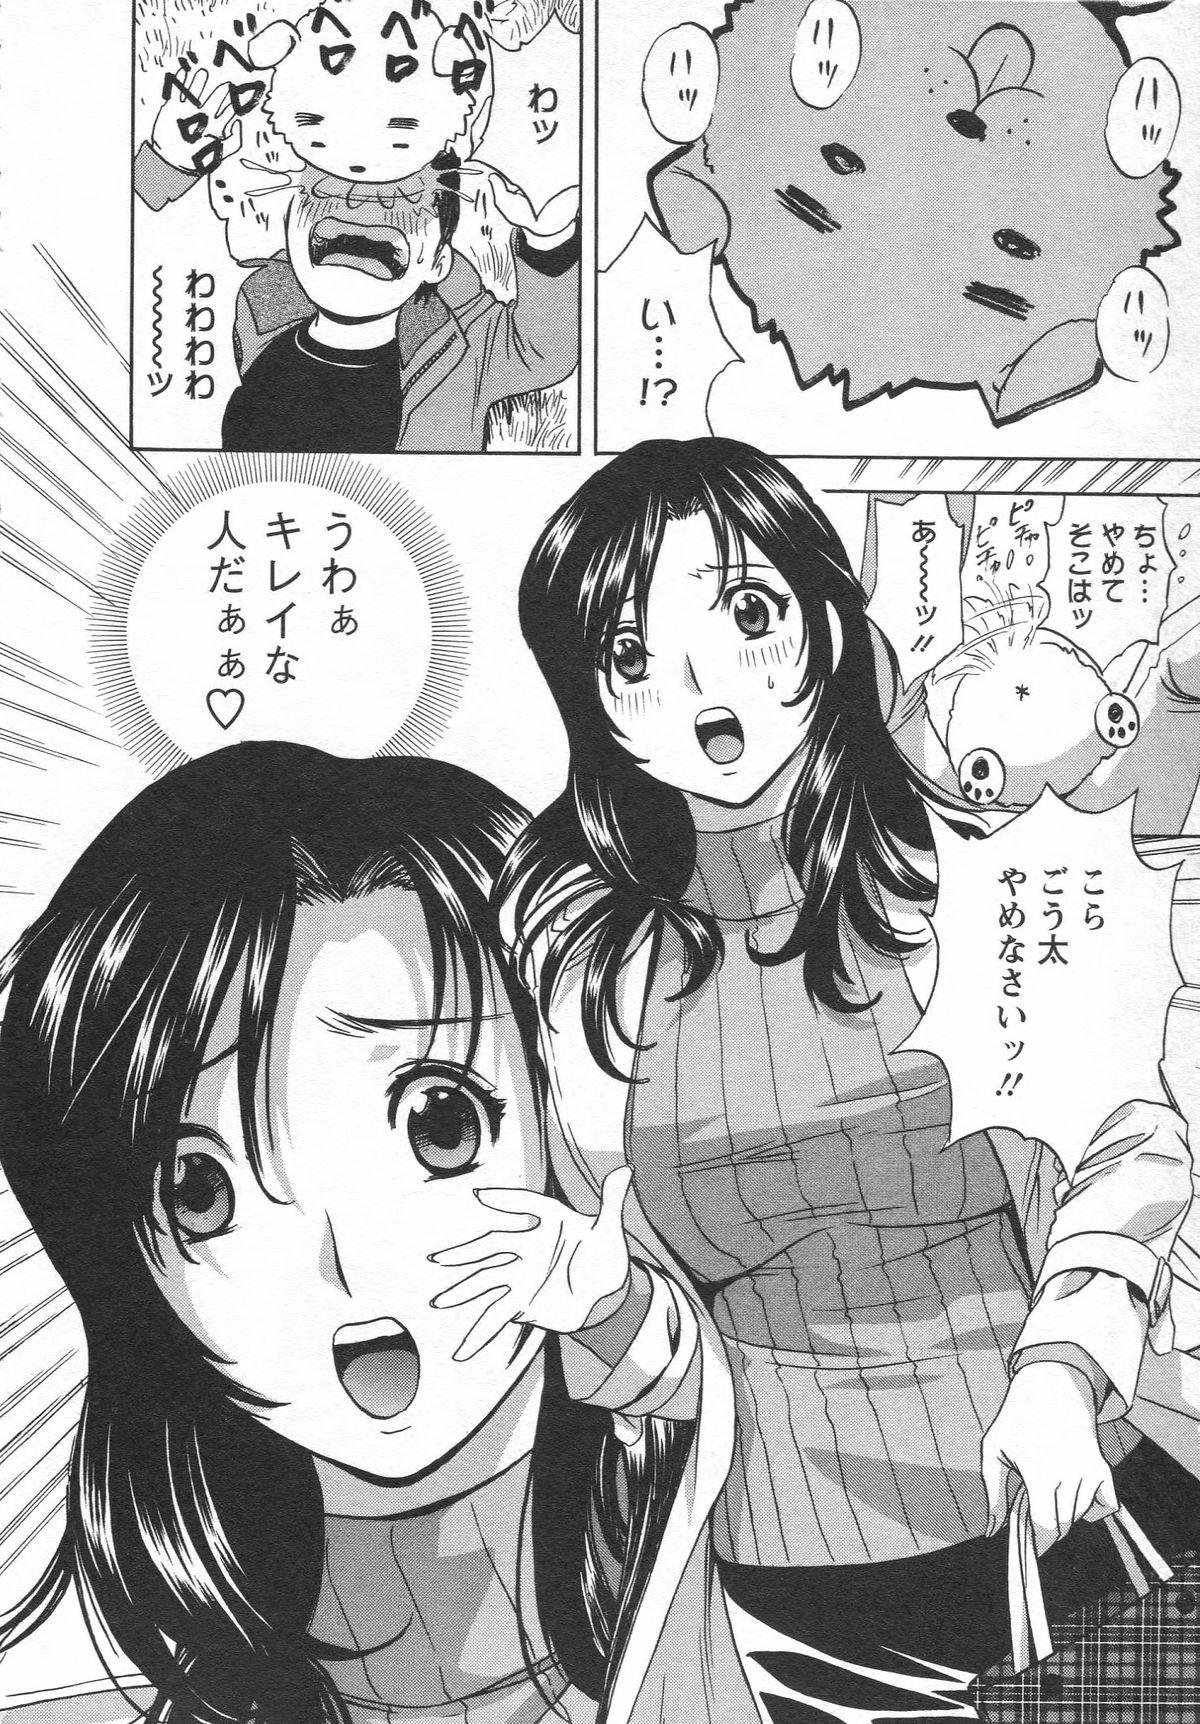 Manga no youna Hitozuma to no Hibi - Days with Married Women such as Comics. 9